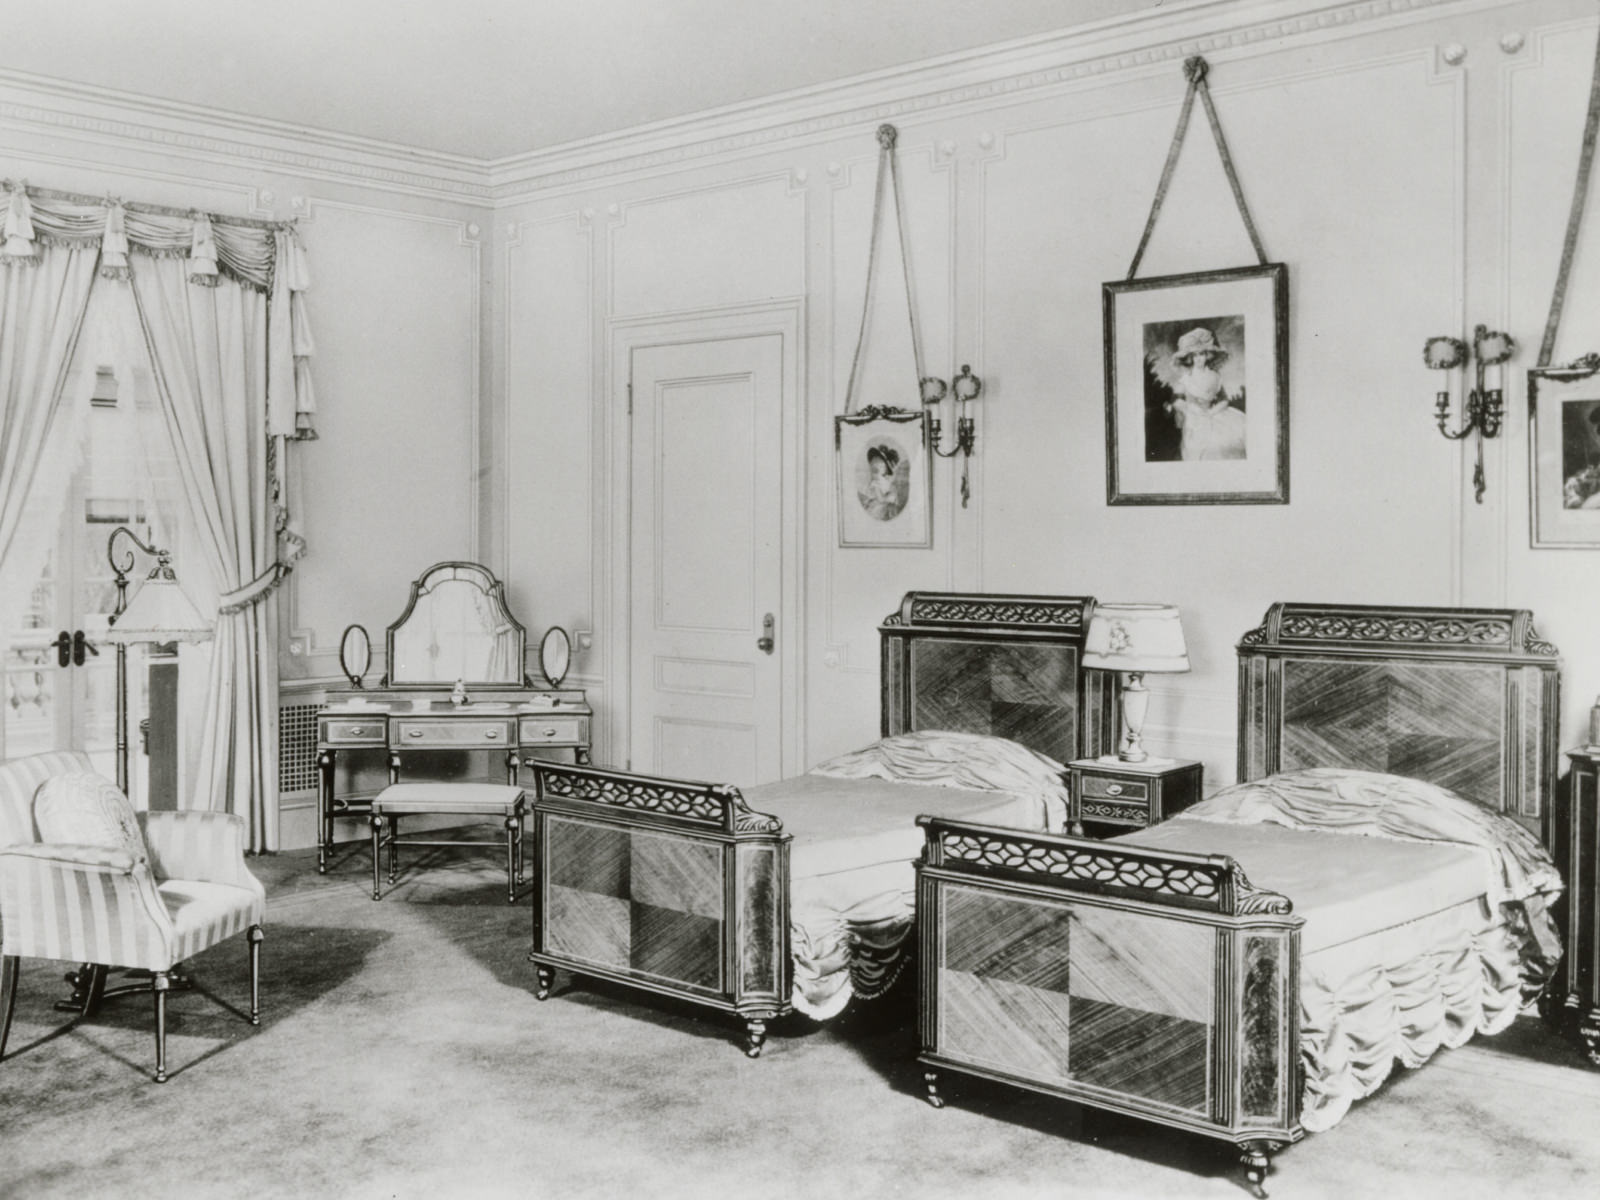 Uma réplica de um conjunto de dormitório antigo com duas camas iguais, mesa de cabeceira e penteadeira com acabamento em madeira parquet.